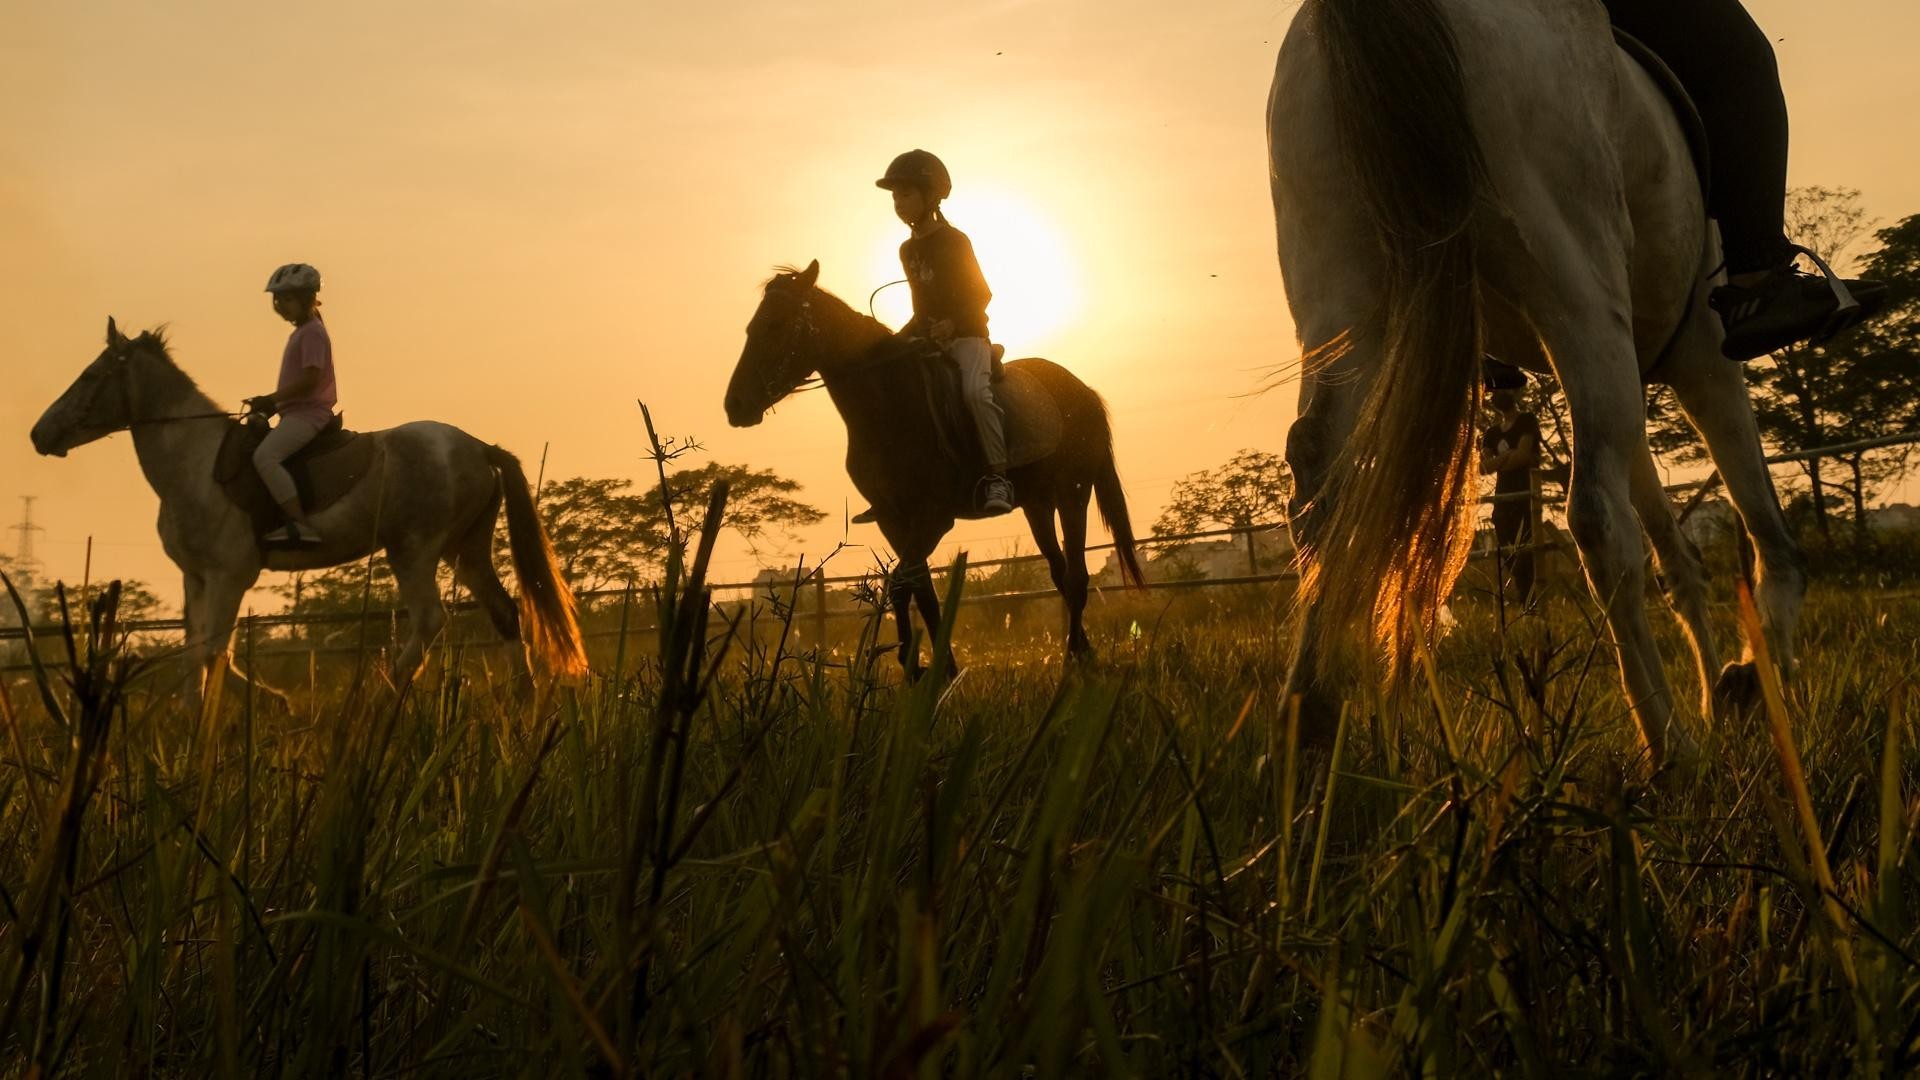 Huấn luyện viên dạy cưỡi ngựa theo phong cách châu Âu tại Hà Nội ảnh 13